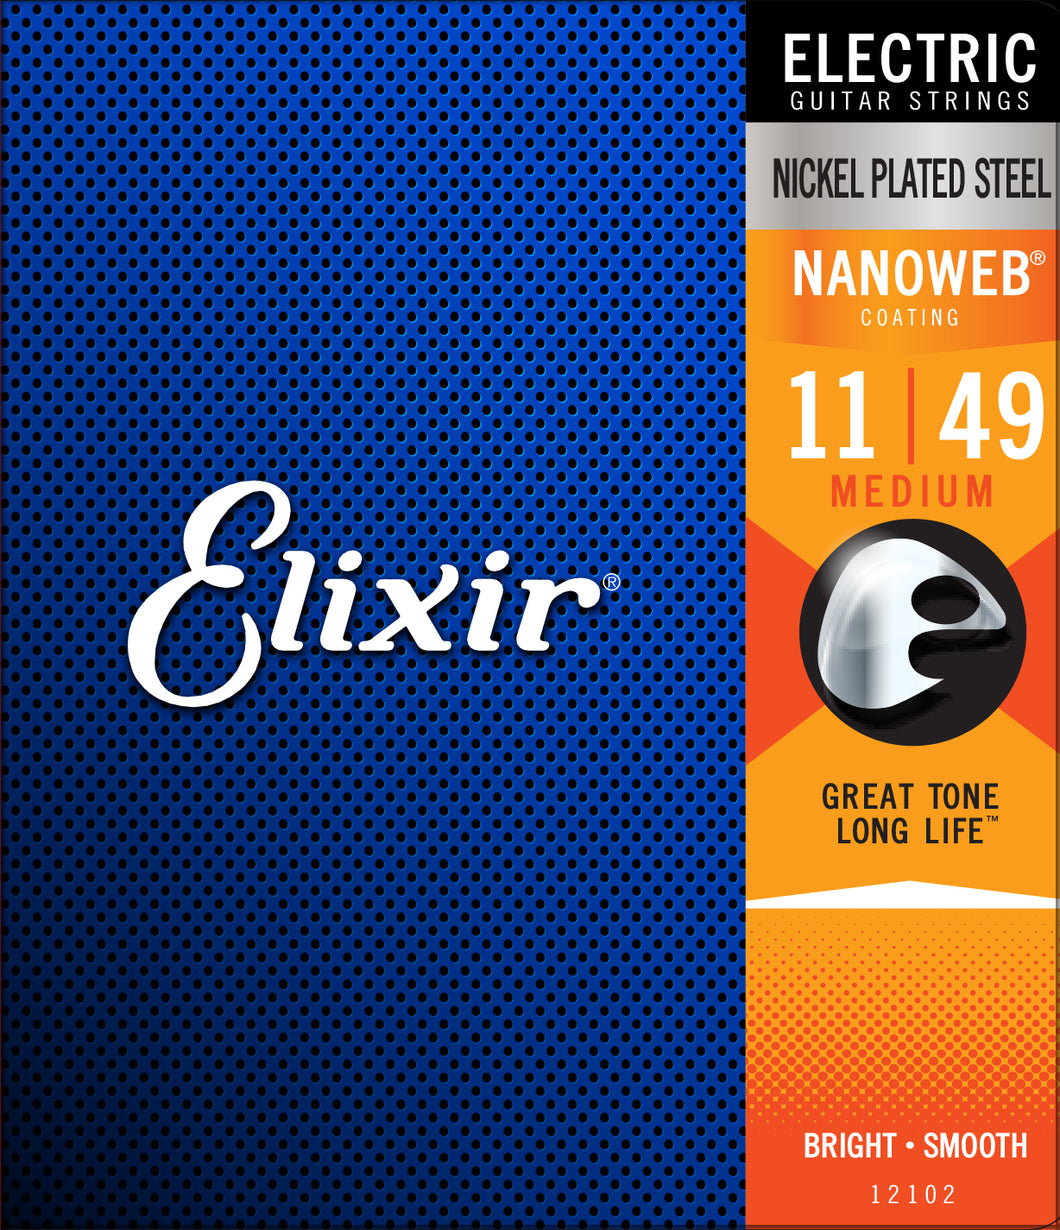 Elixir NanoWeb Electric strings 11-49 Nickle Plated Steel